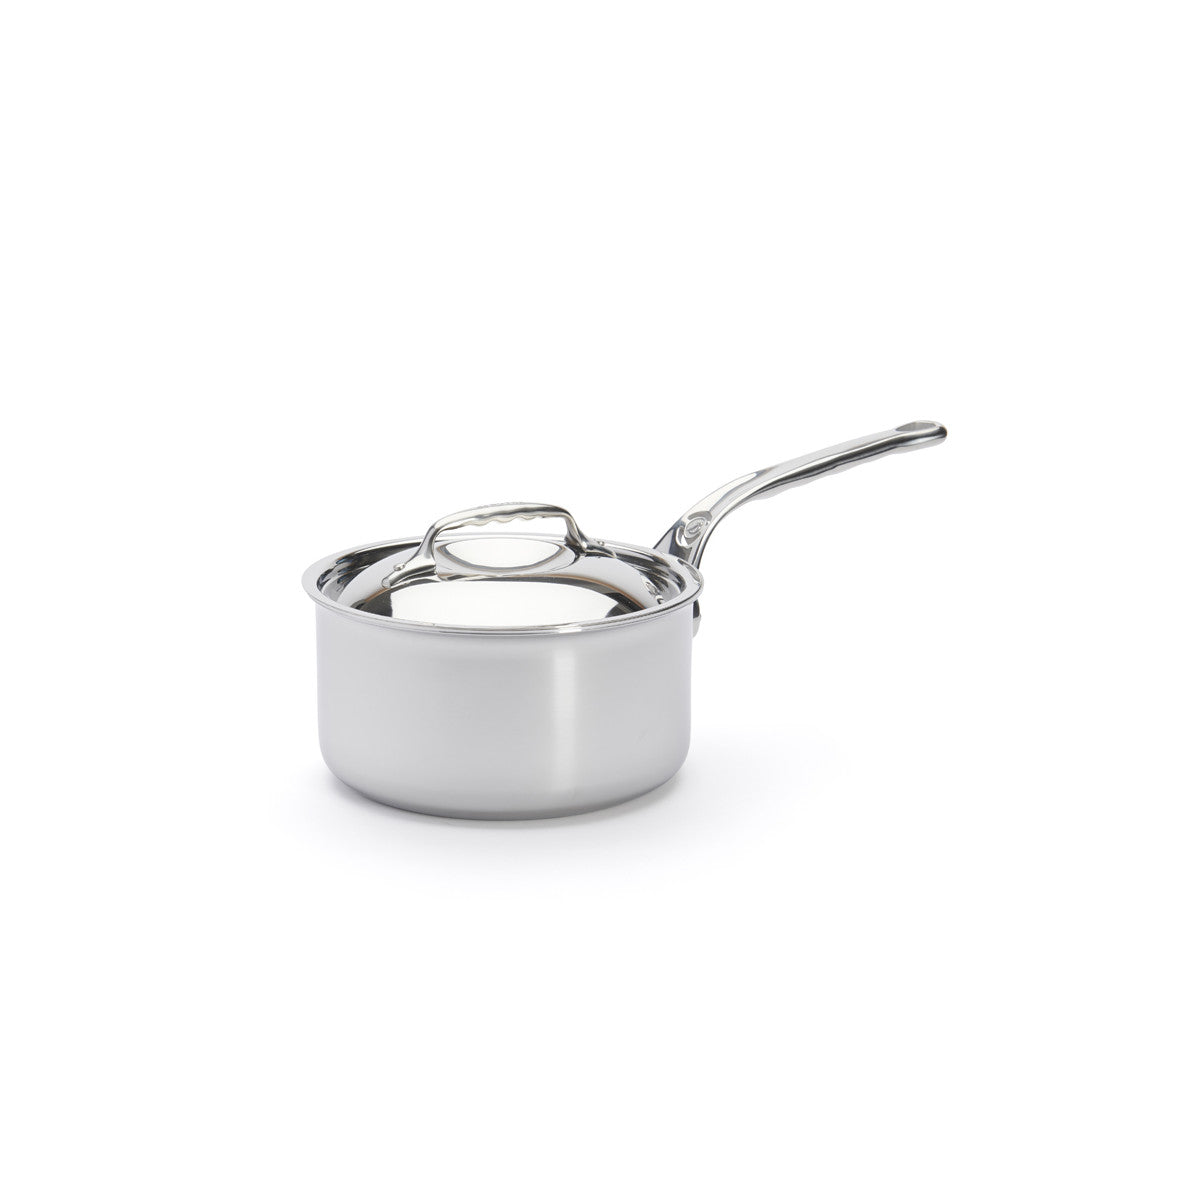 De Buyer Affinity saucepan with lid